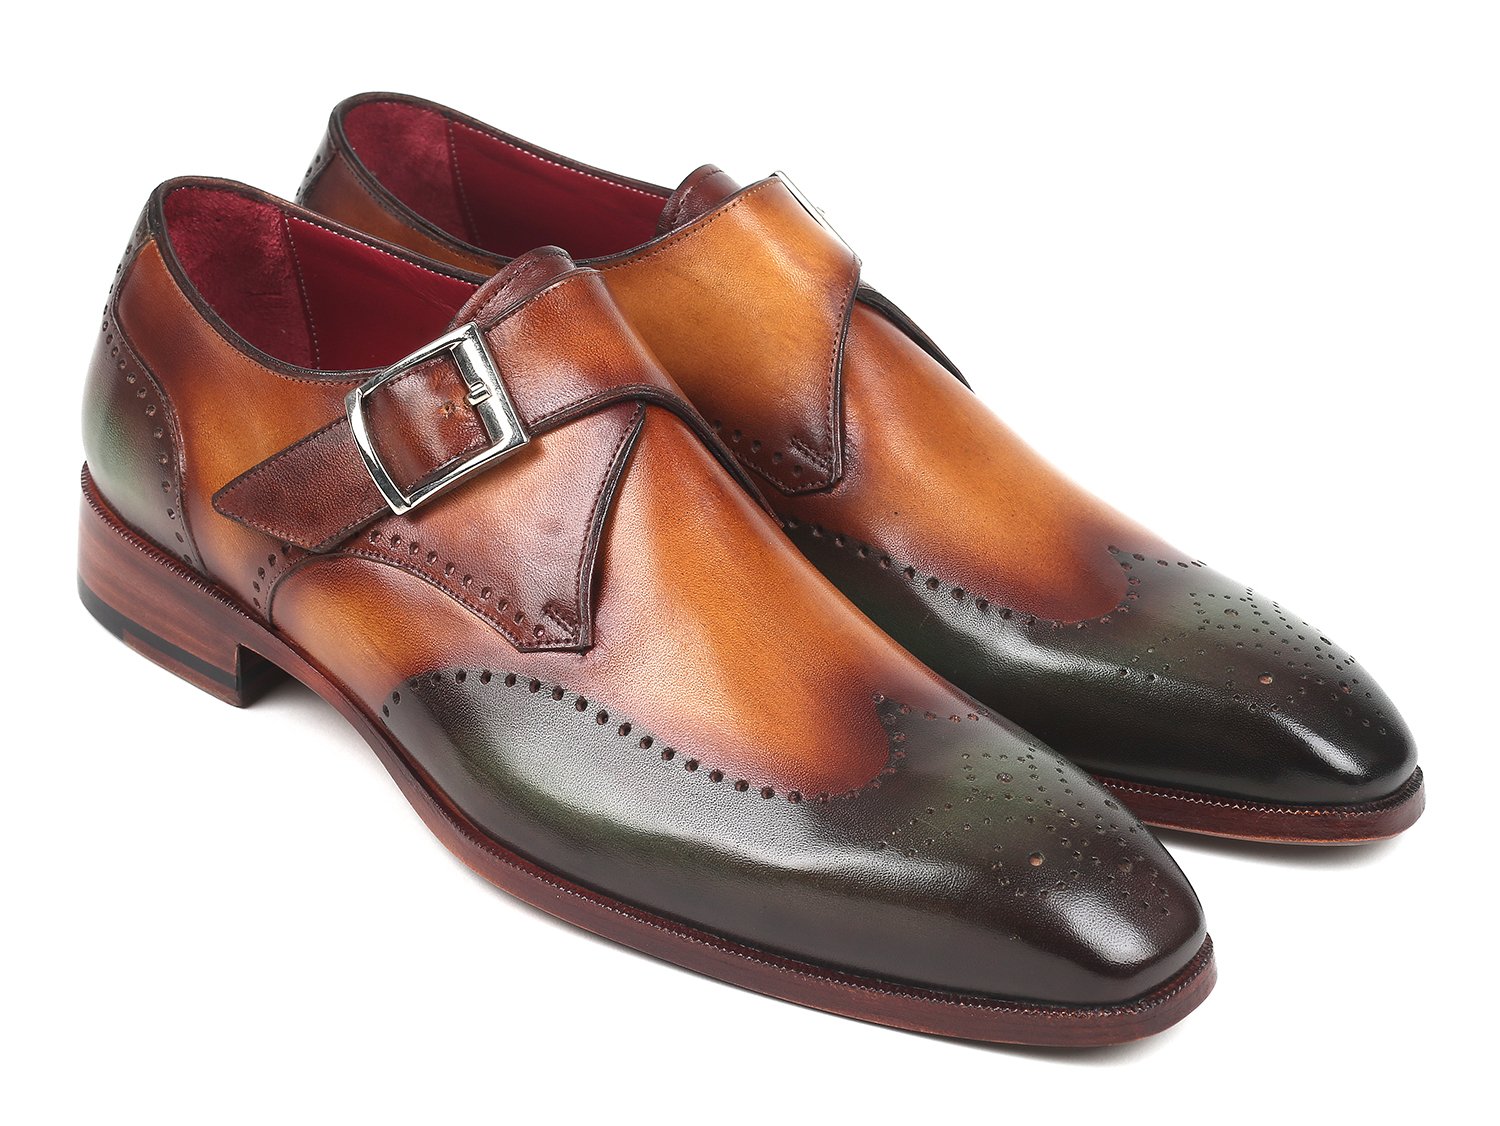 Paul Parkman "944-GRN-CML" Green / Camel Genuine Leather Monkstraps Shoes.